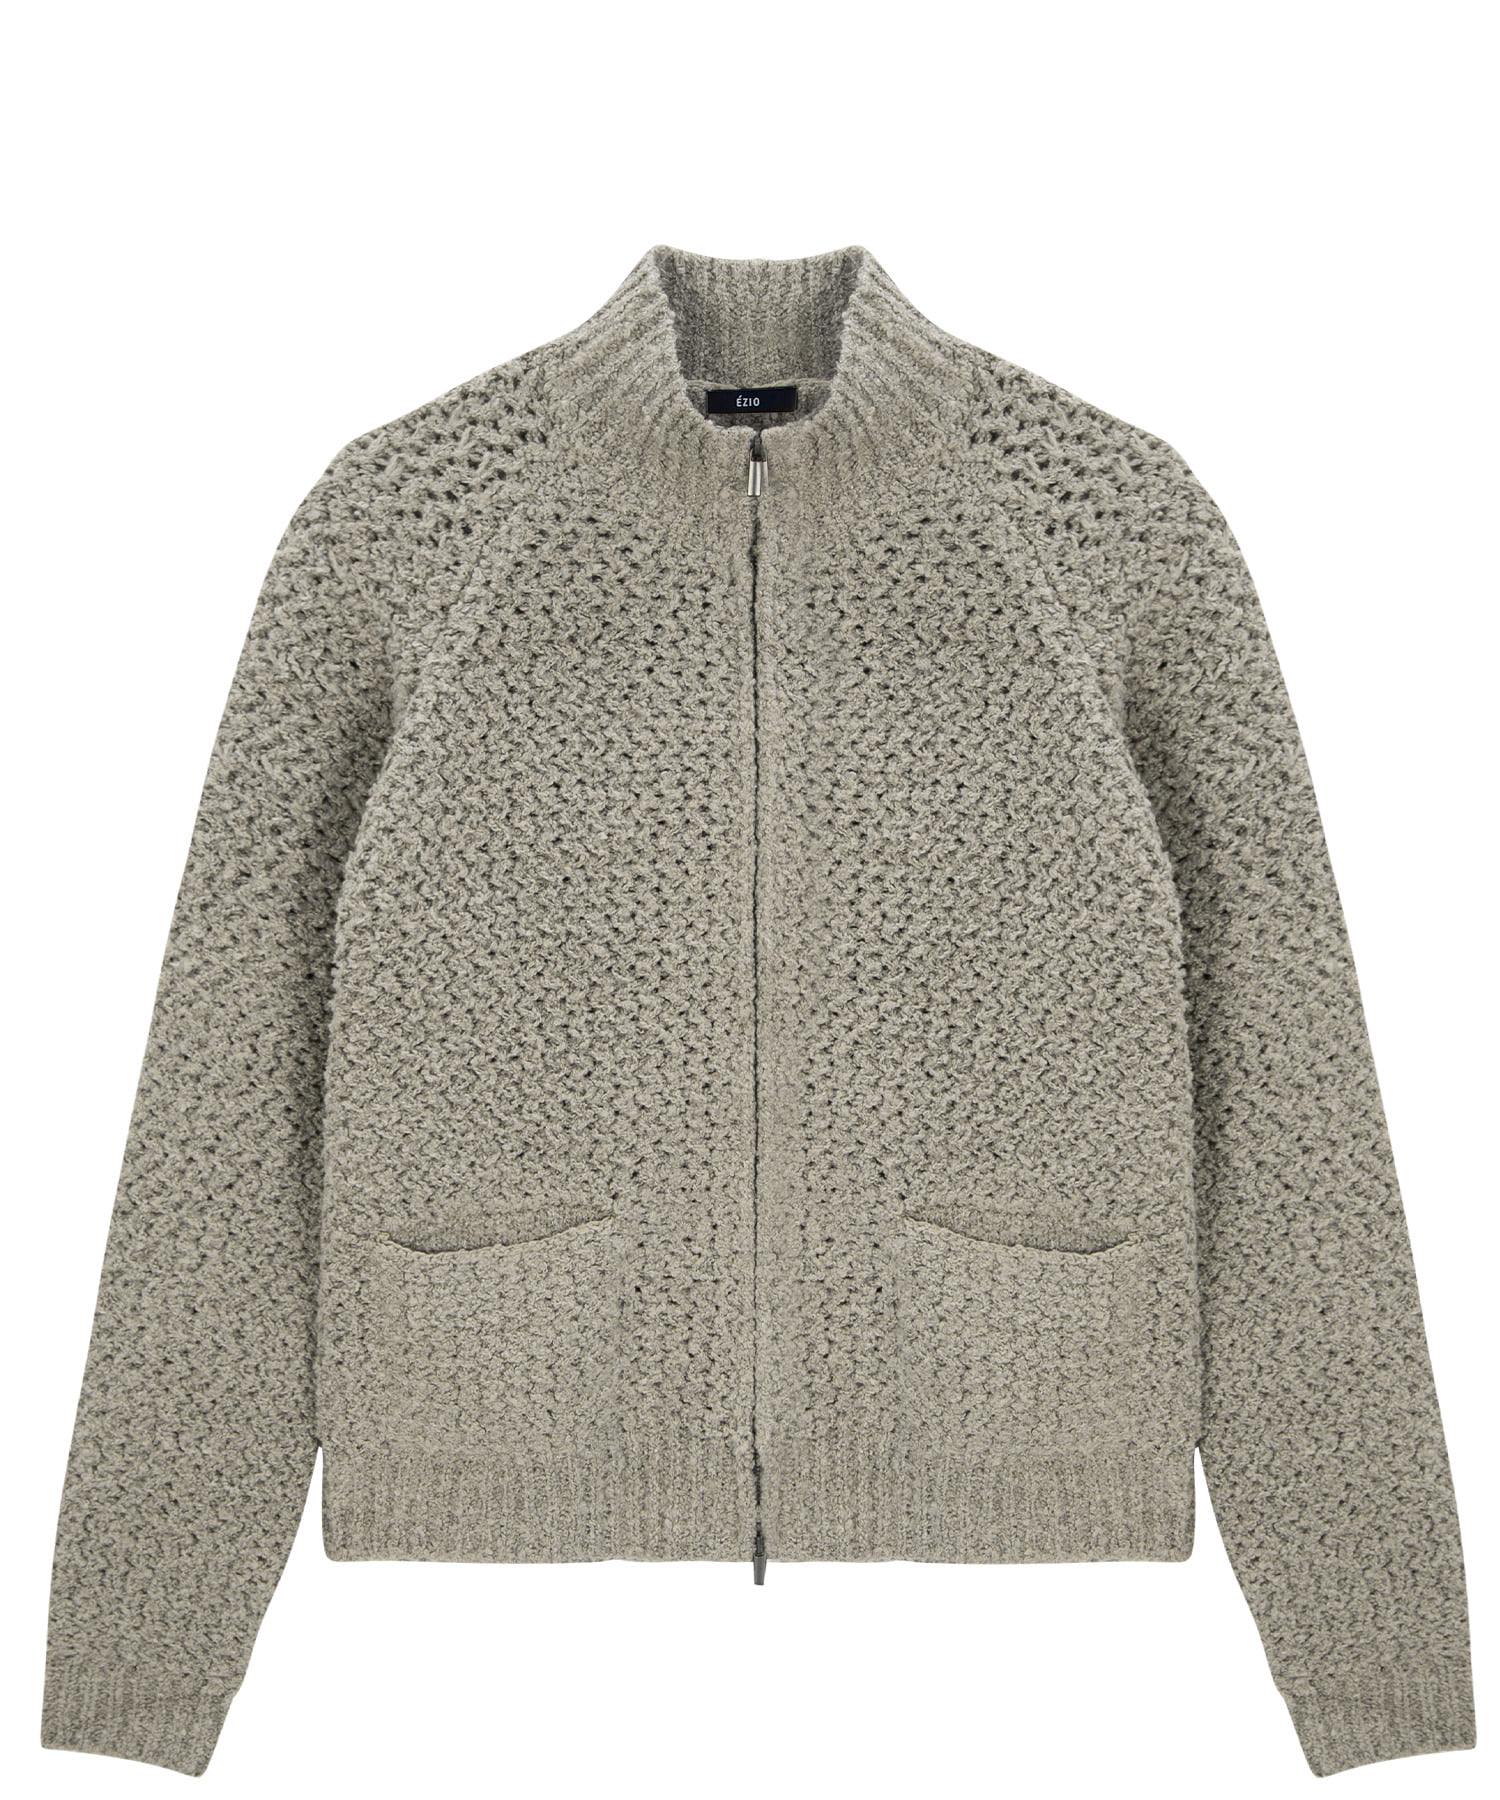 Wool Blend 2way Zipper Knit Cardigan - Beige